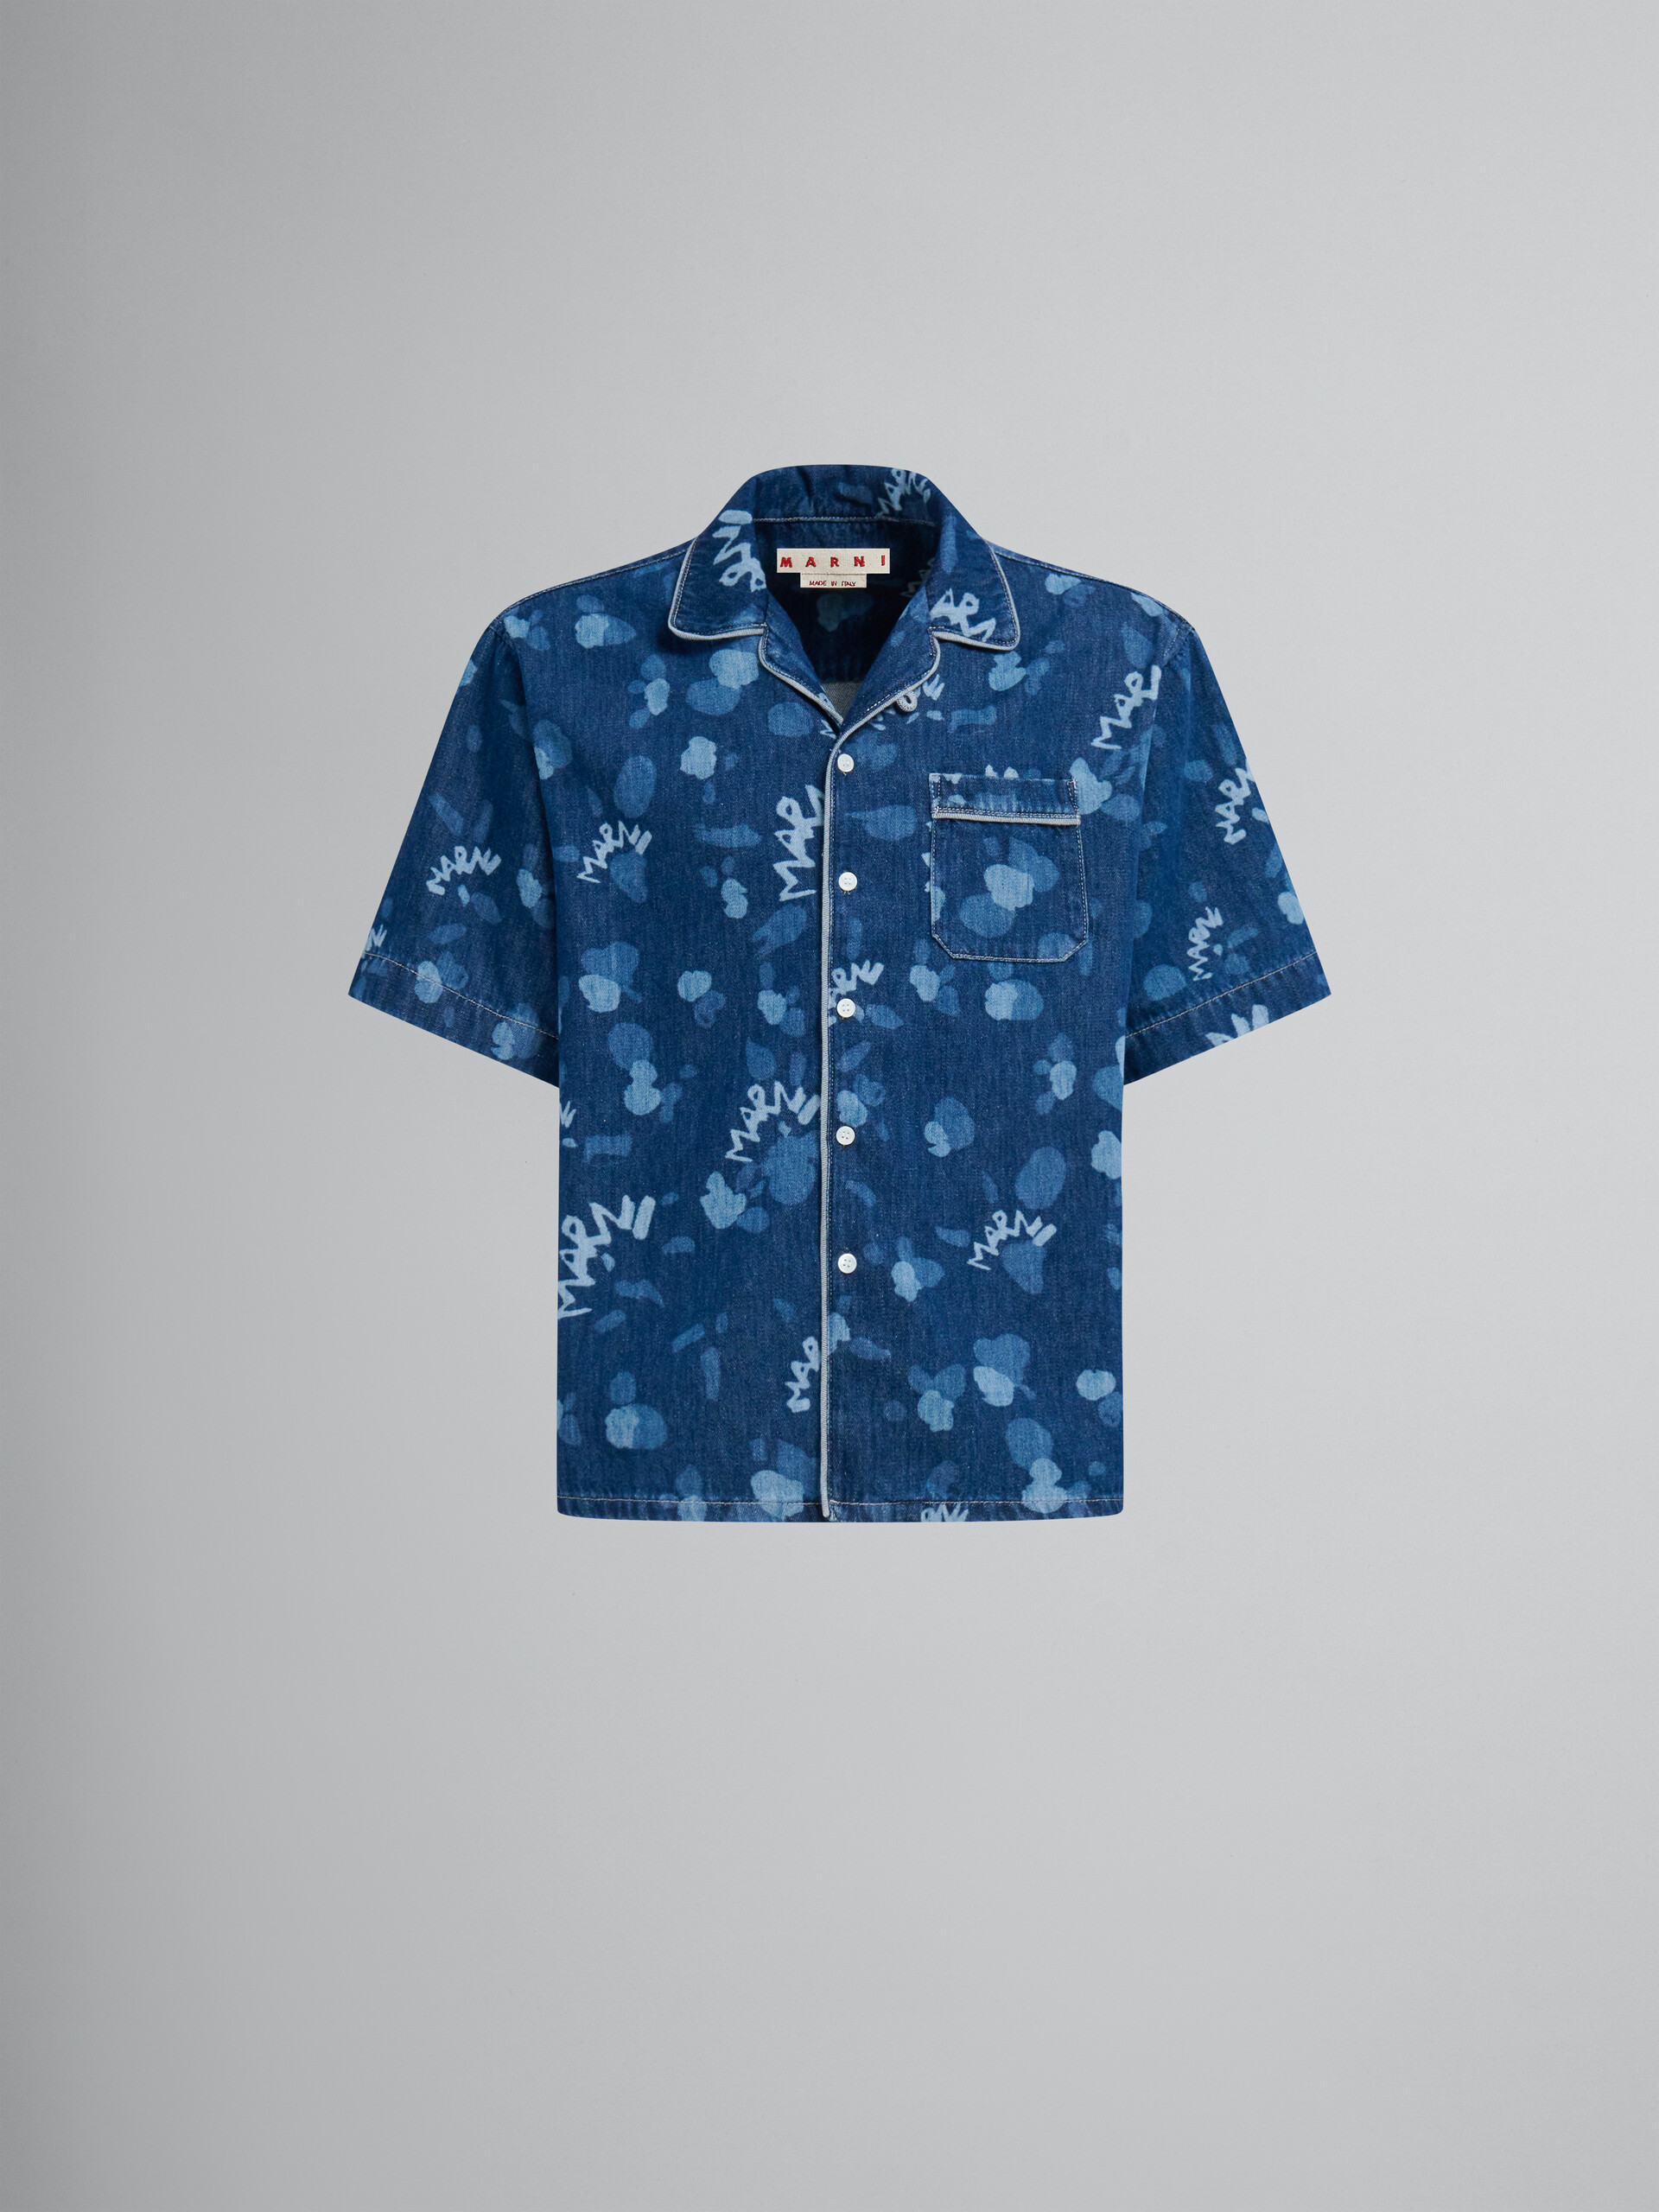 Blaues Bowlinghemd aus Denim mit Marni Dripping-Print - Hemden - Image 1